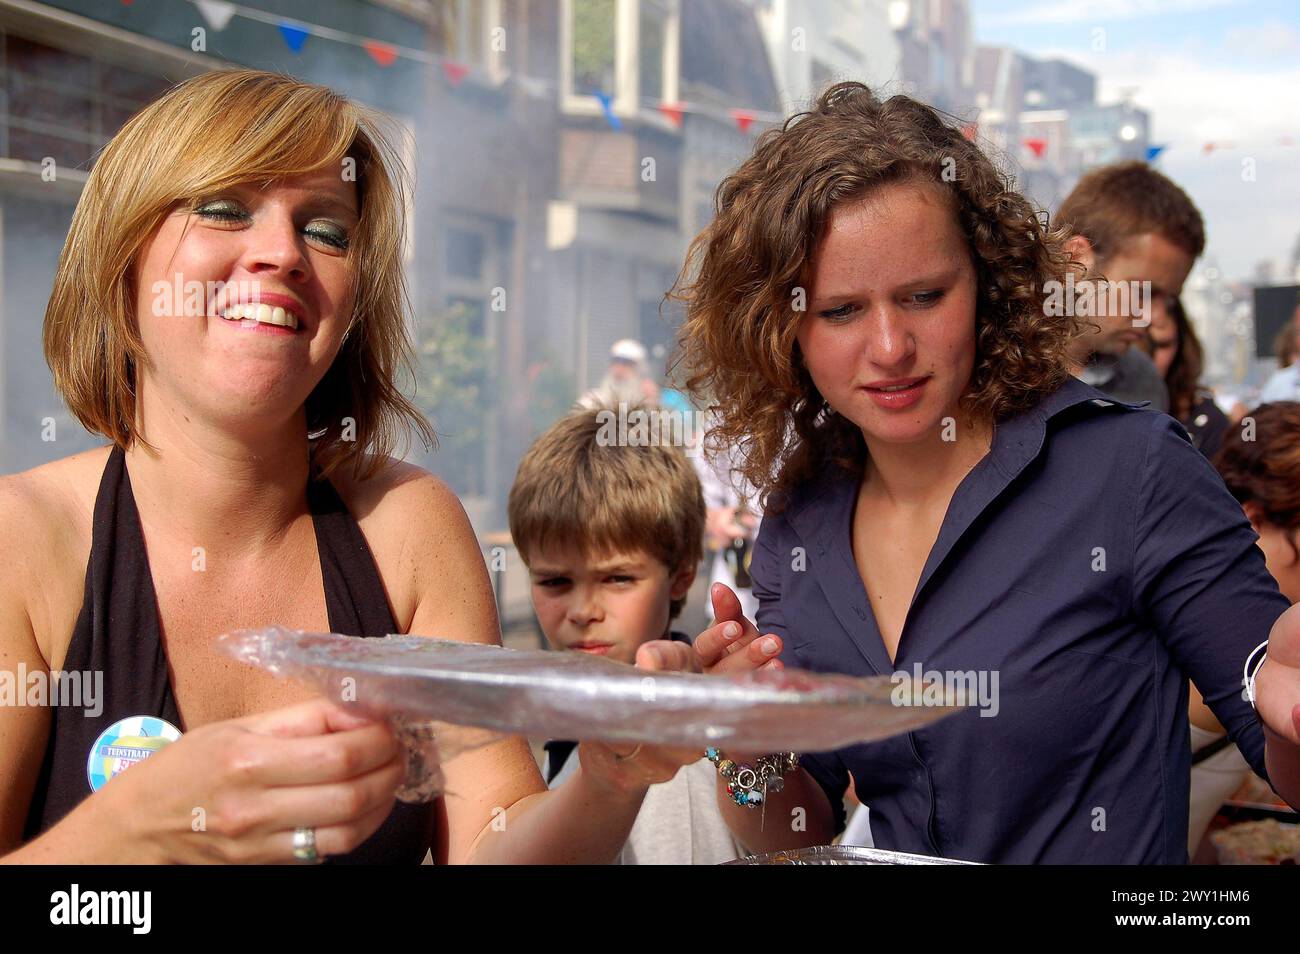 Zwei Frauen servieren Streetfood zwei, junge Erwachsene, kaukasische Frau servieren Streetfood während eines Barbecue/Barbeque in der Nachbarschaft an einem Frühling, Samstagnachmittag im Jahr 2008. Tilburg, Niederlande. Tilburg Tuinstraat Noord-Brabant Nederland Copyright: XGuidoxKoppesx Stockfoto